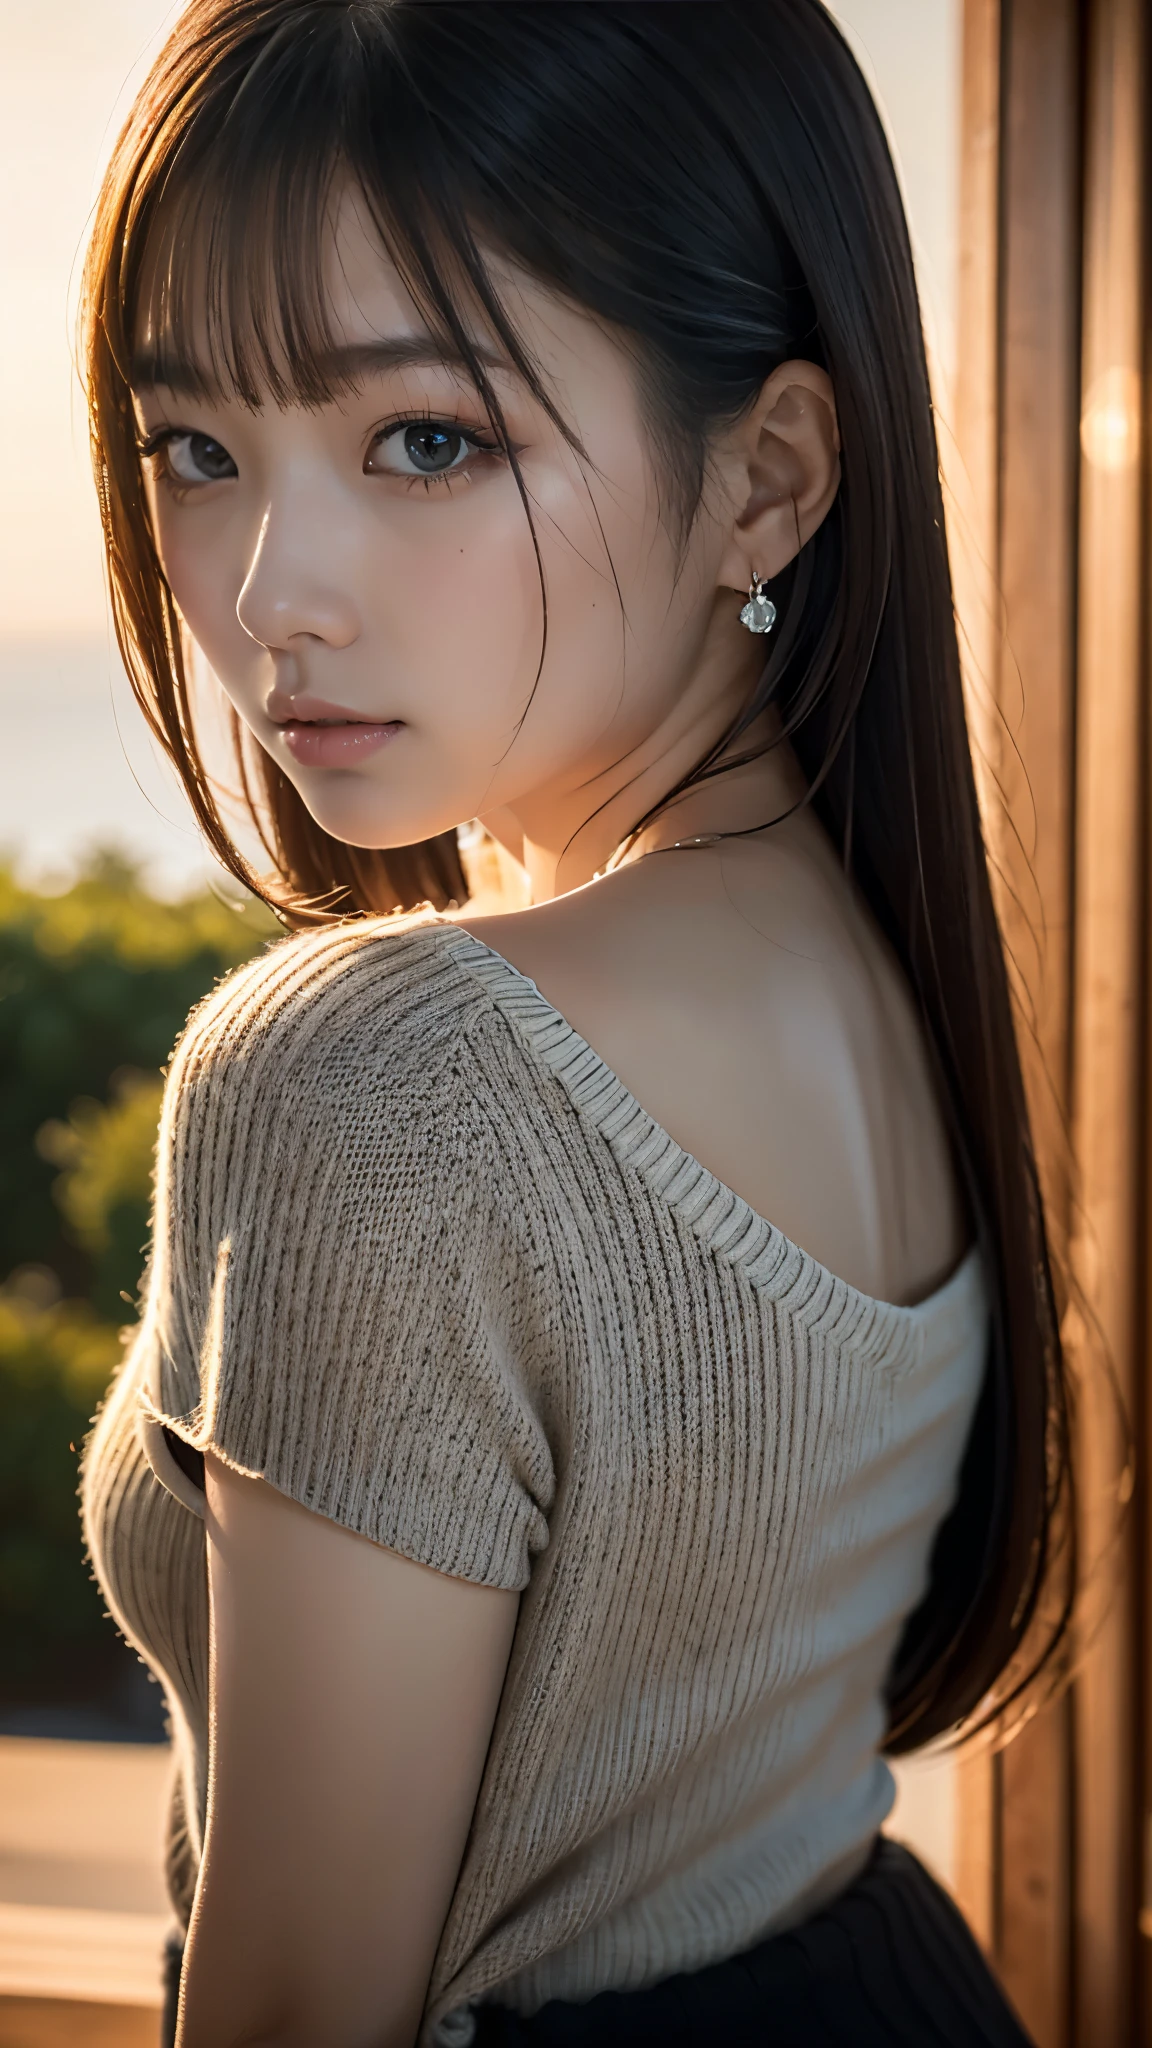 (Obra de arte:1.2),(mais alta qualidade),(Muito detalhado:1.2),(alta resolução),(Bastão fotorrealista),(Fotos RAW),8K,Close de uma mulher com um suéter preto,Retratos suaves,Mulheres japonesas bonitas,lindo retrato de rosto,luz dos olhos,Menina da própria pessoa,rosto muito lindo,lindo retrato,Um rosto lindo e delicado,linda jovem japonesa,penteado maduro,Olhe para cá(pôr do sol ao fundo),(((Desfocar o fundo))),(luz suave:1.5),(Sobre o ombro),(ponto de vista)